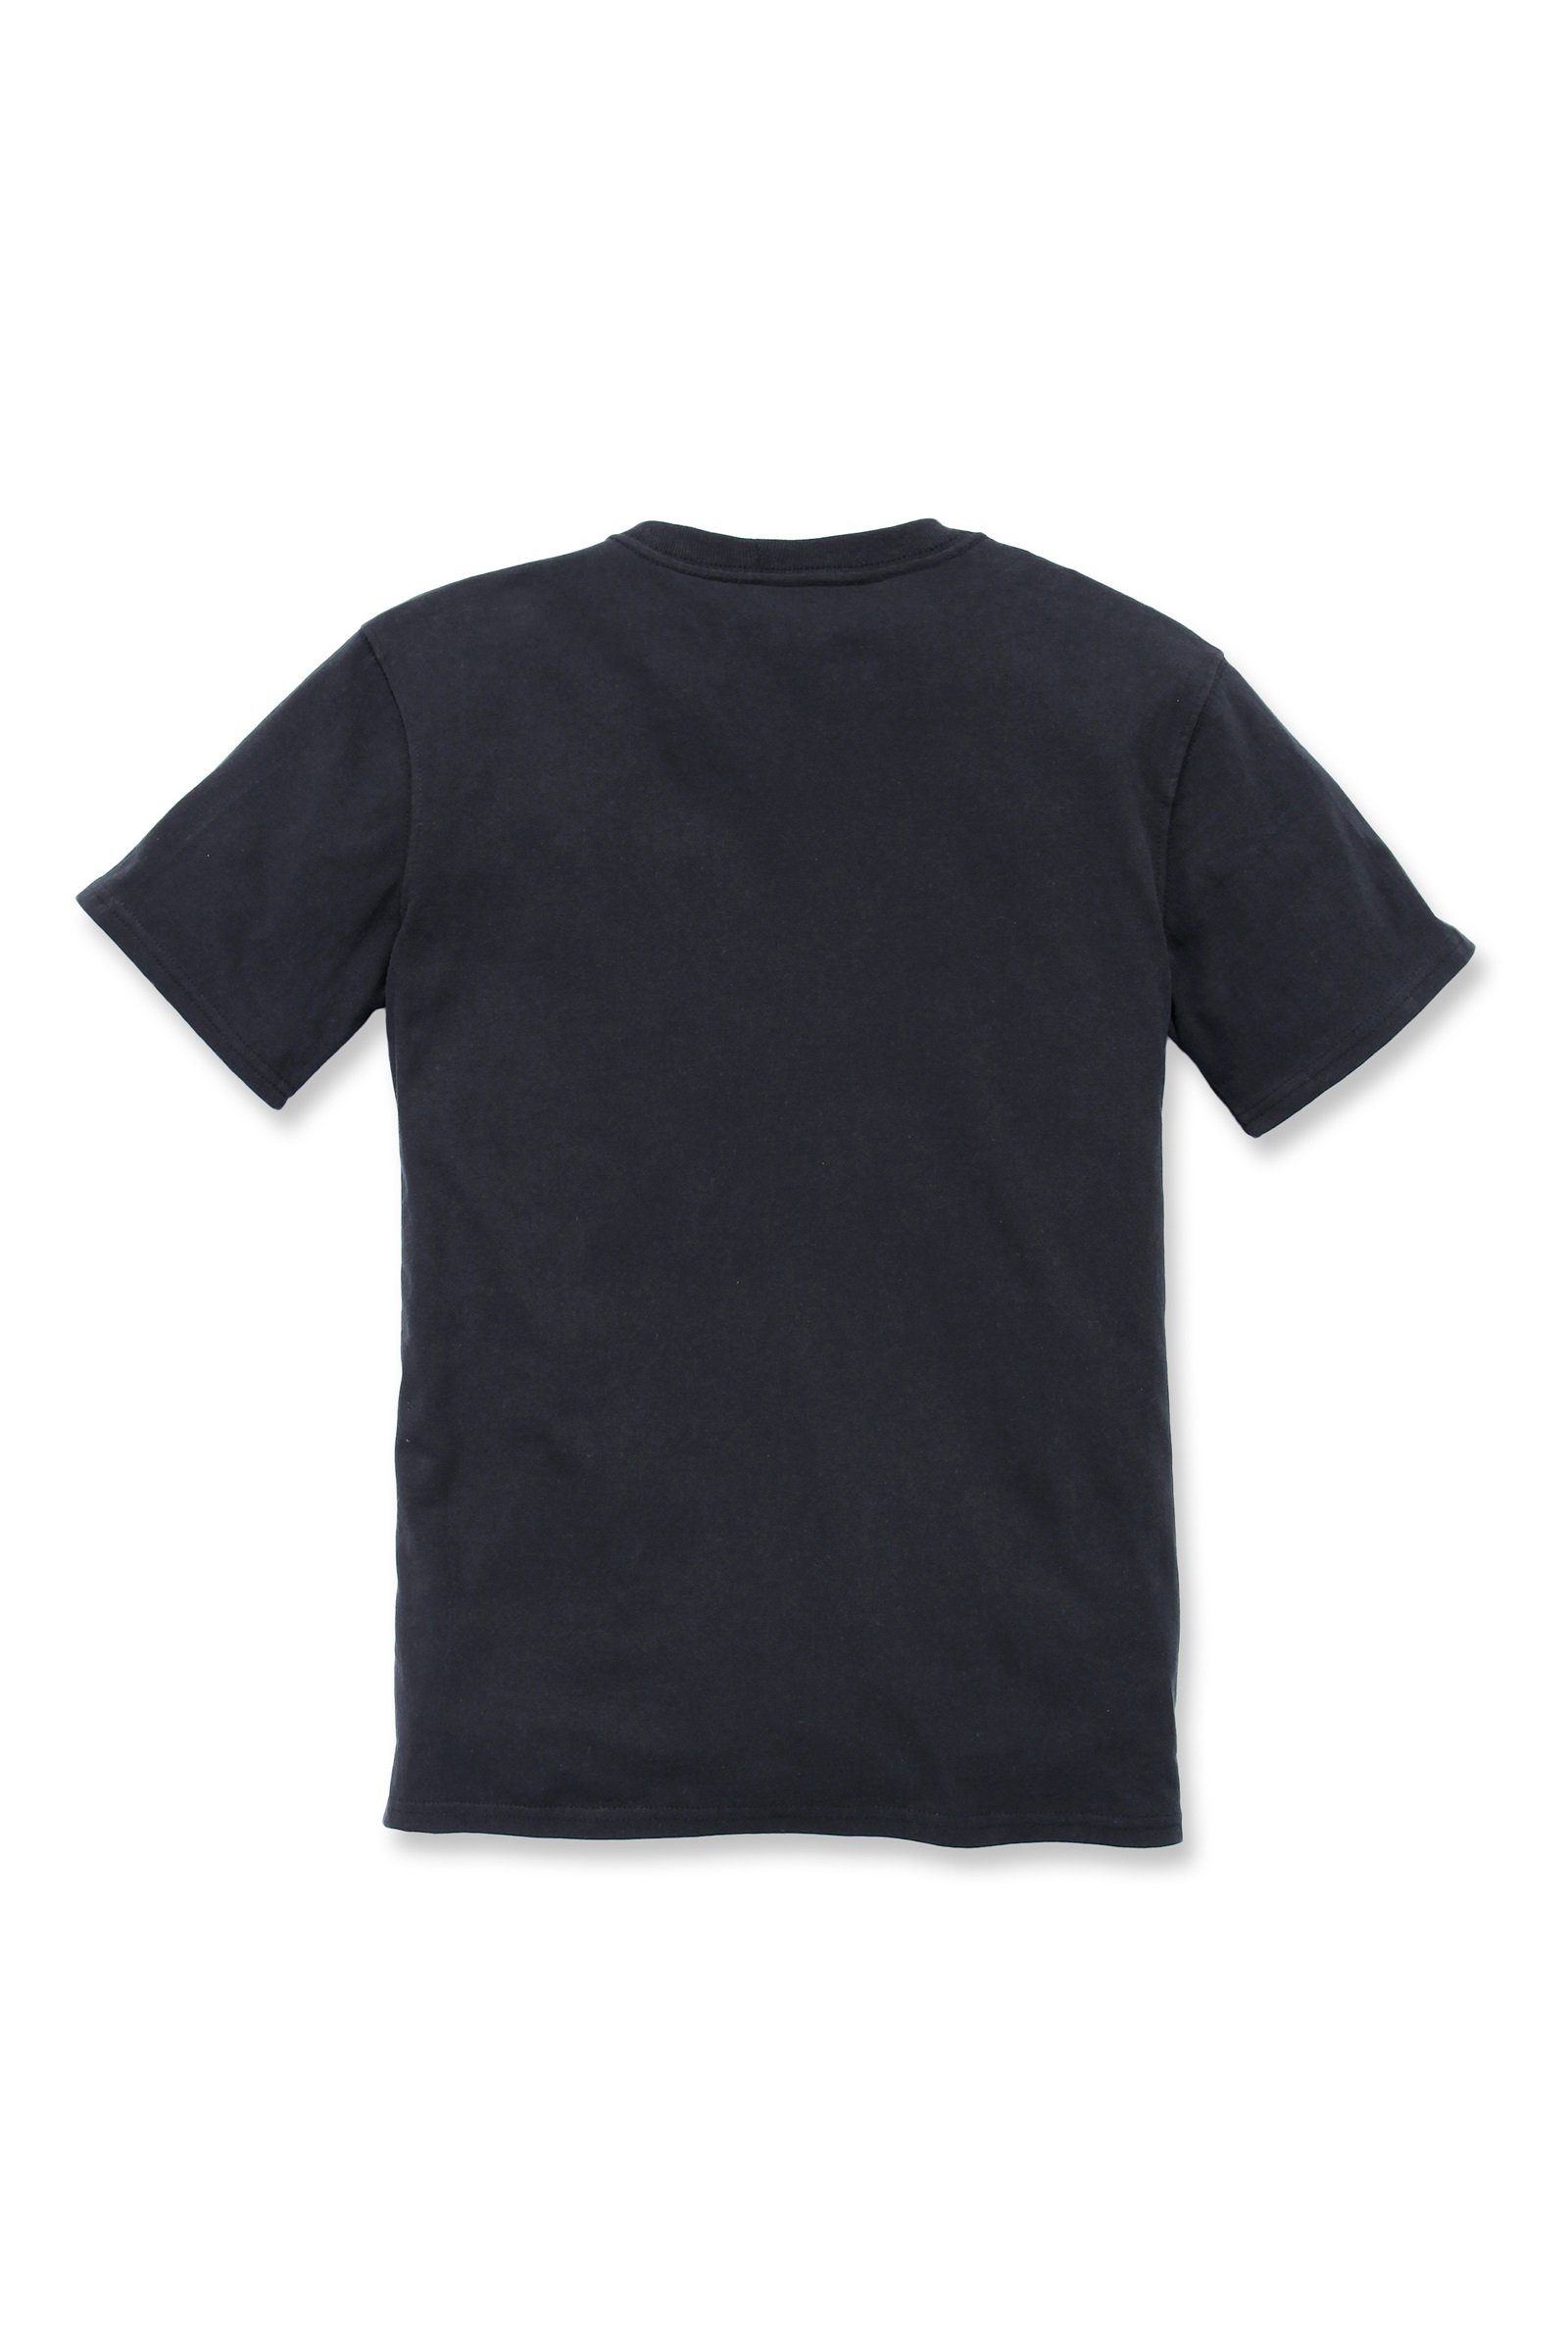 Short-Sleeve Loose Carhartt T-Shirt Heavyweight Carhartt Adult Damen Fit T-Shirt Pocket black